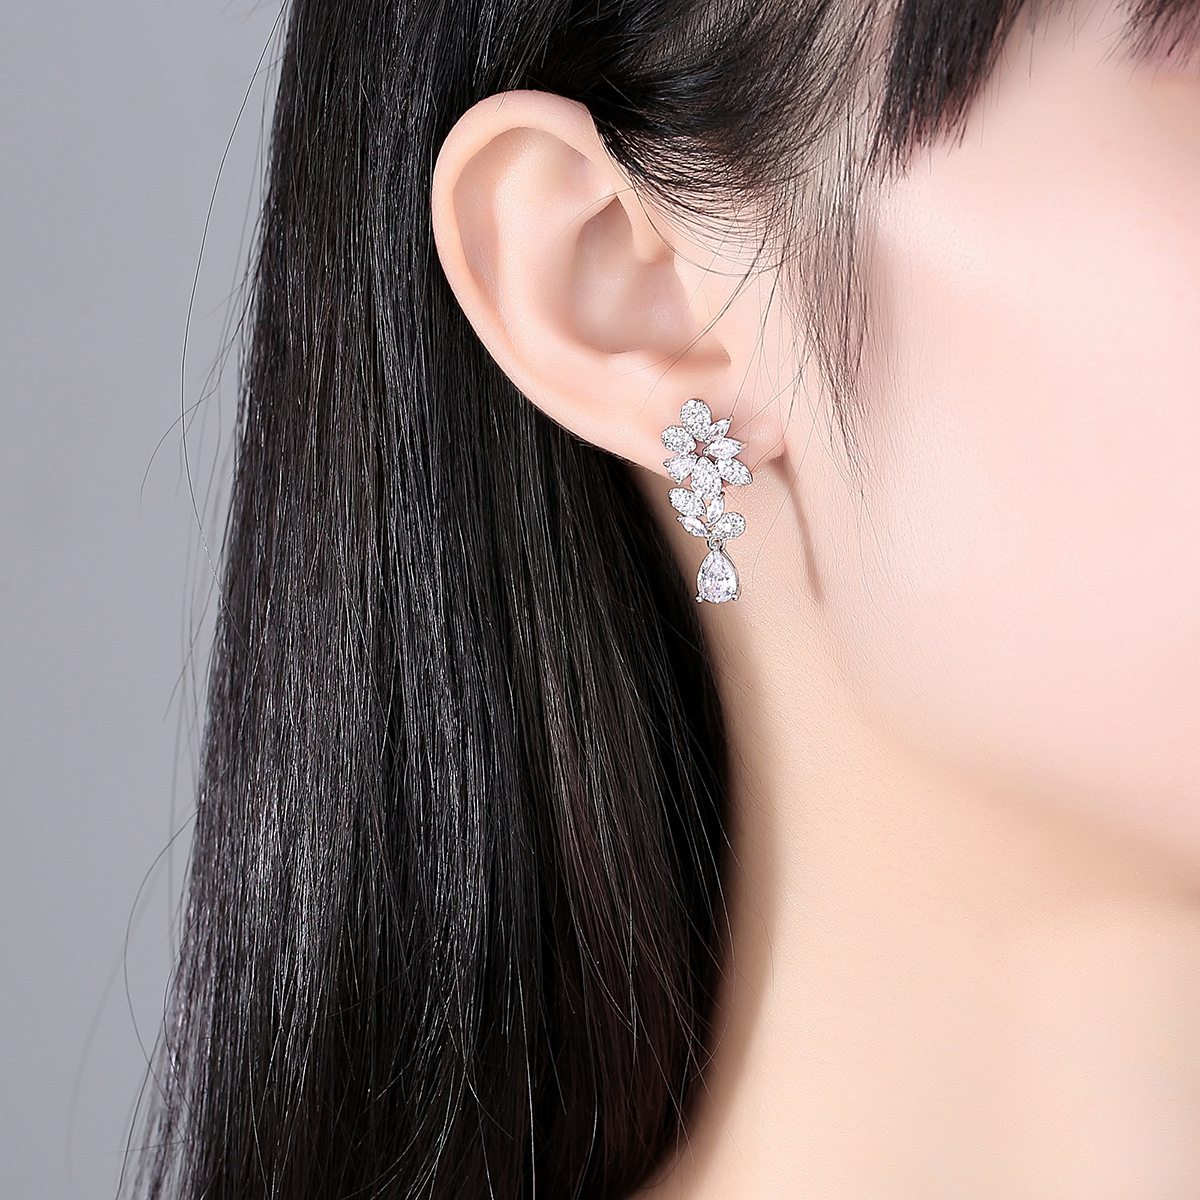 Summer stud earrings tassels earrings for women